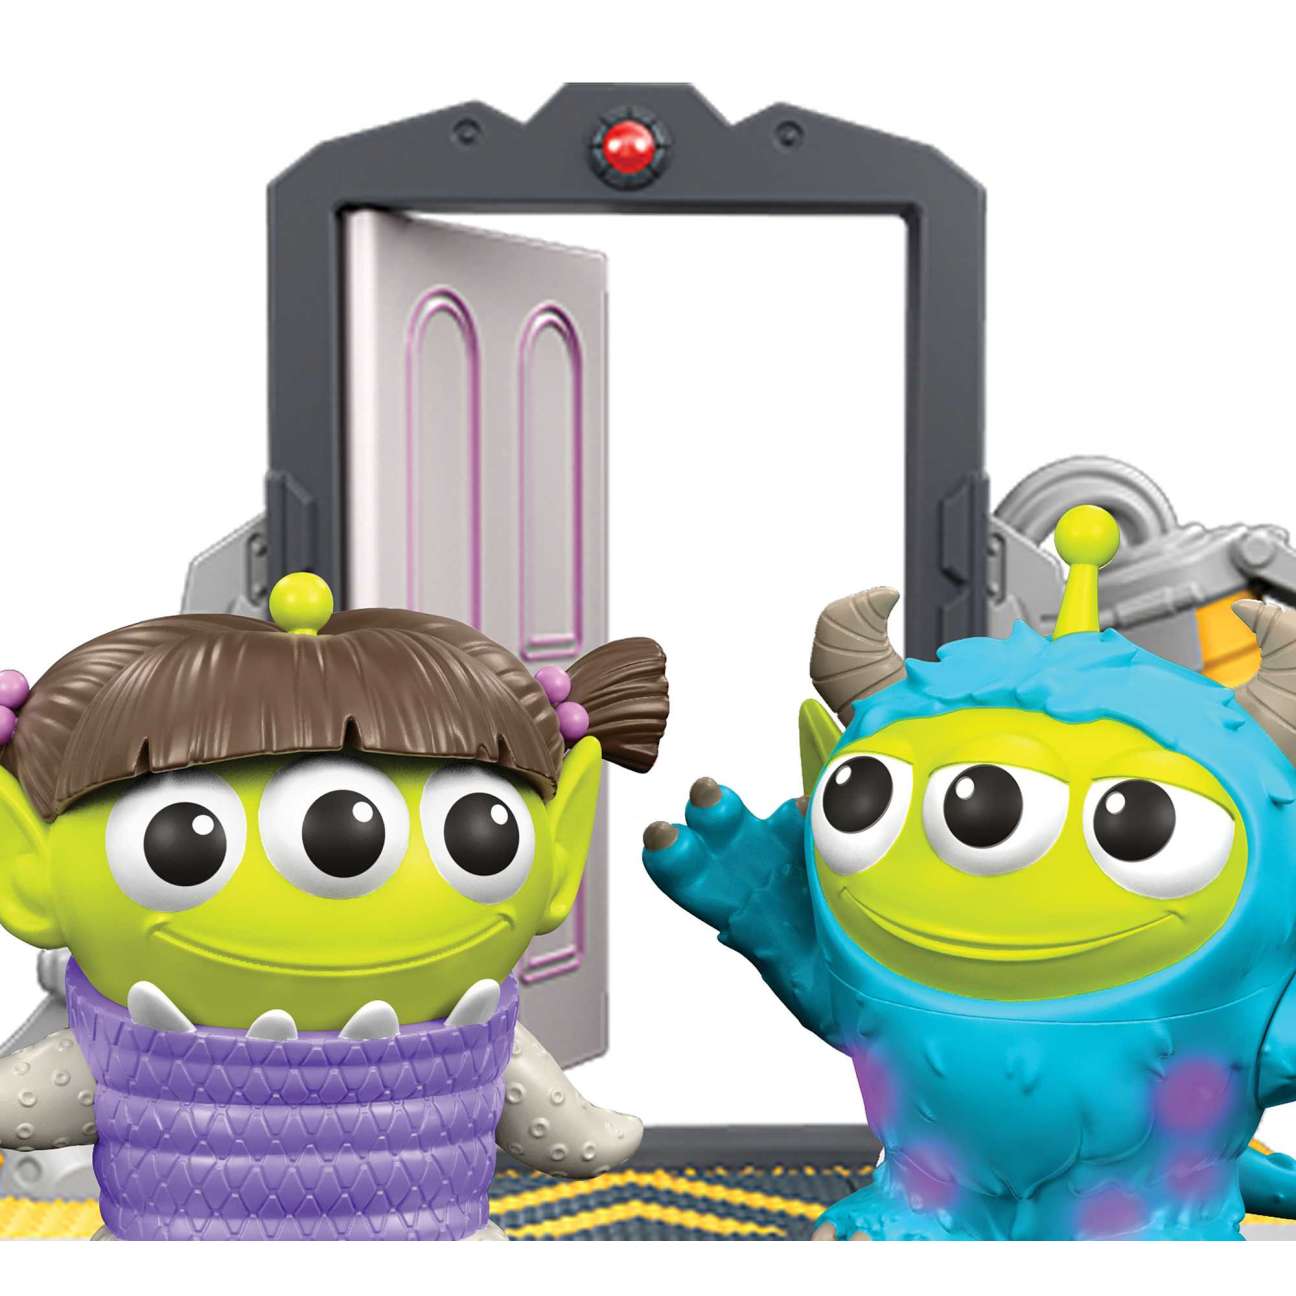 Disney Pixar Toy Story Alien Remix: Monsters Inc Door Collector Pack